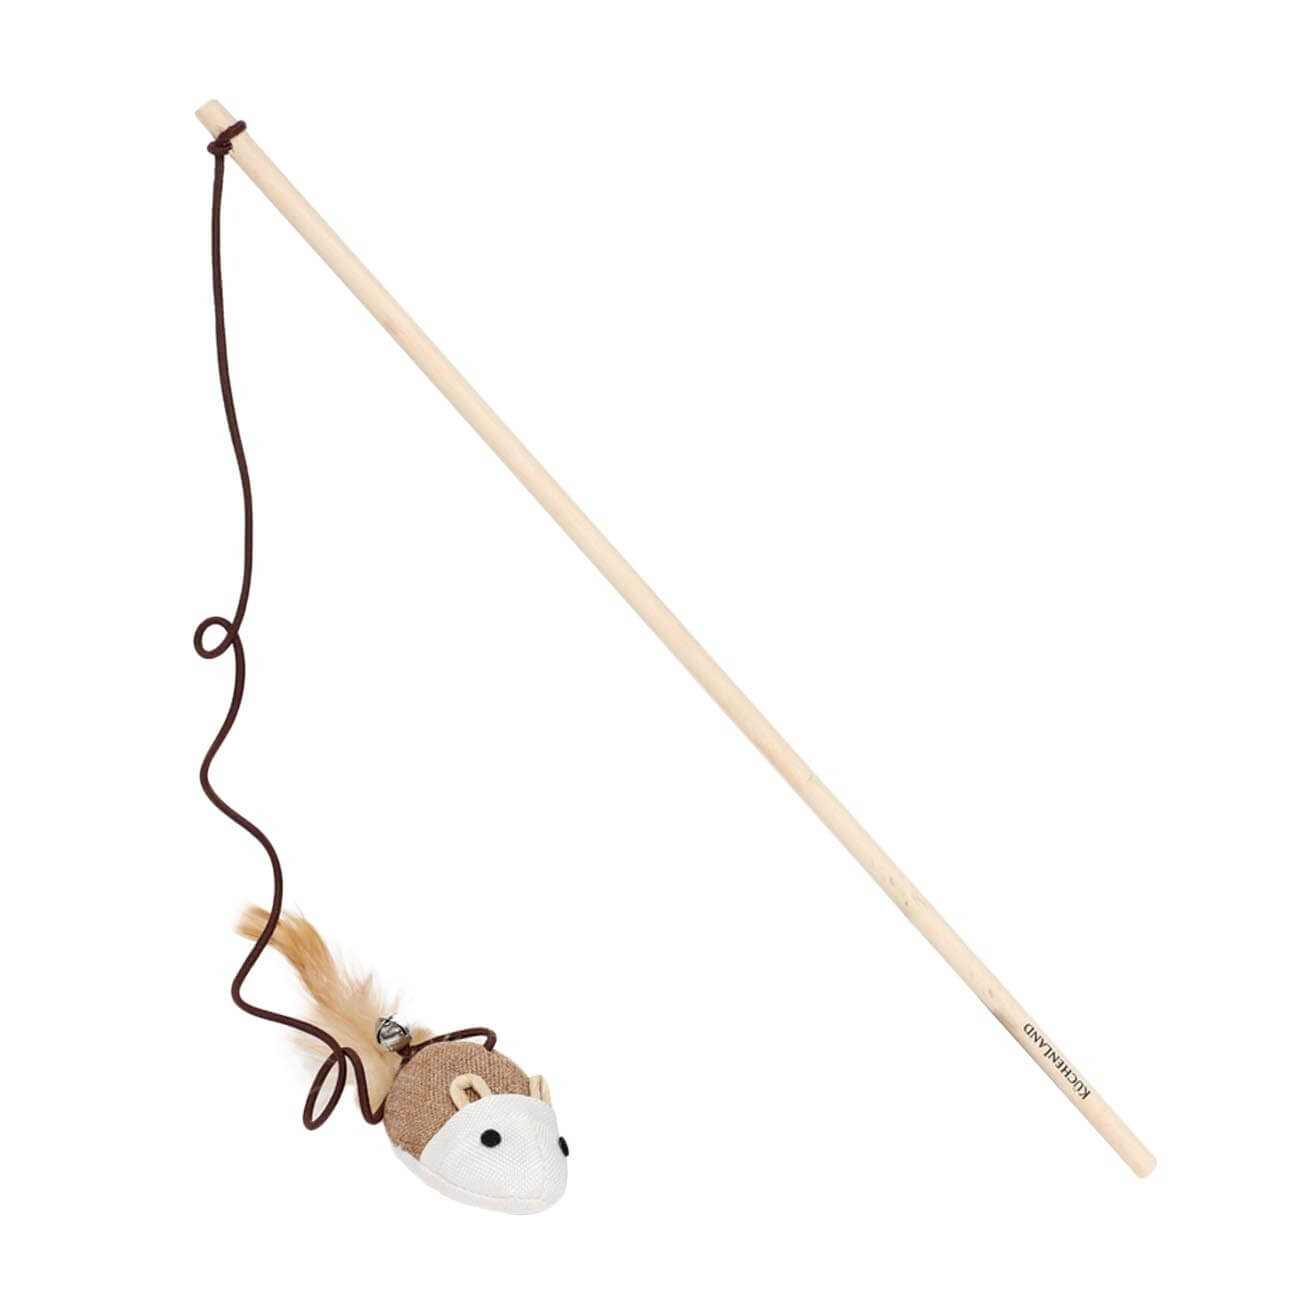 Игрушка-удочка для кошек, 1,1 м, с колокольчиком, дерево/полиэстер, Мышь, Playful cat рыбалка красивые рыбки 9 рыбок удочка сачок